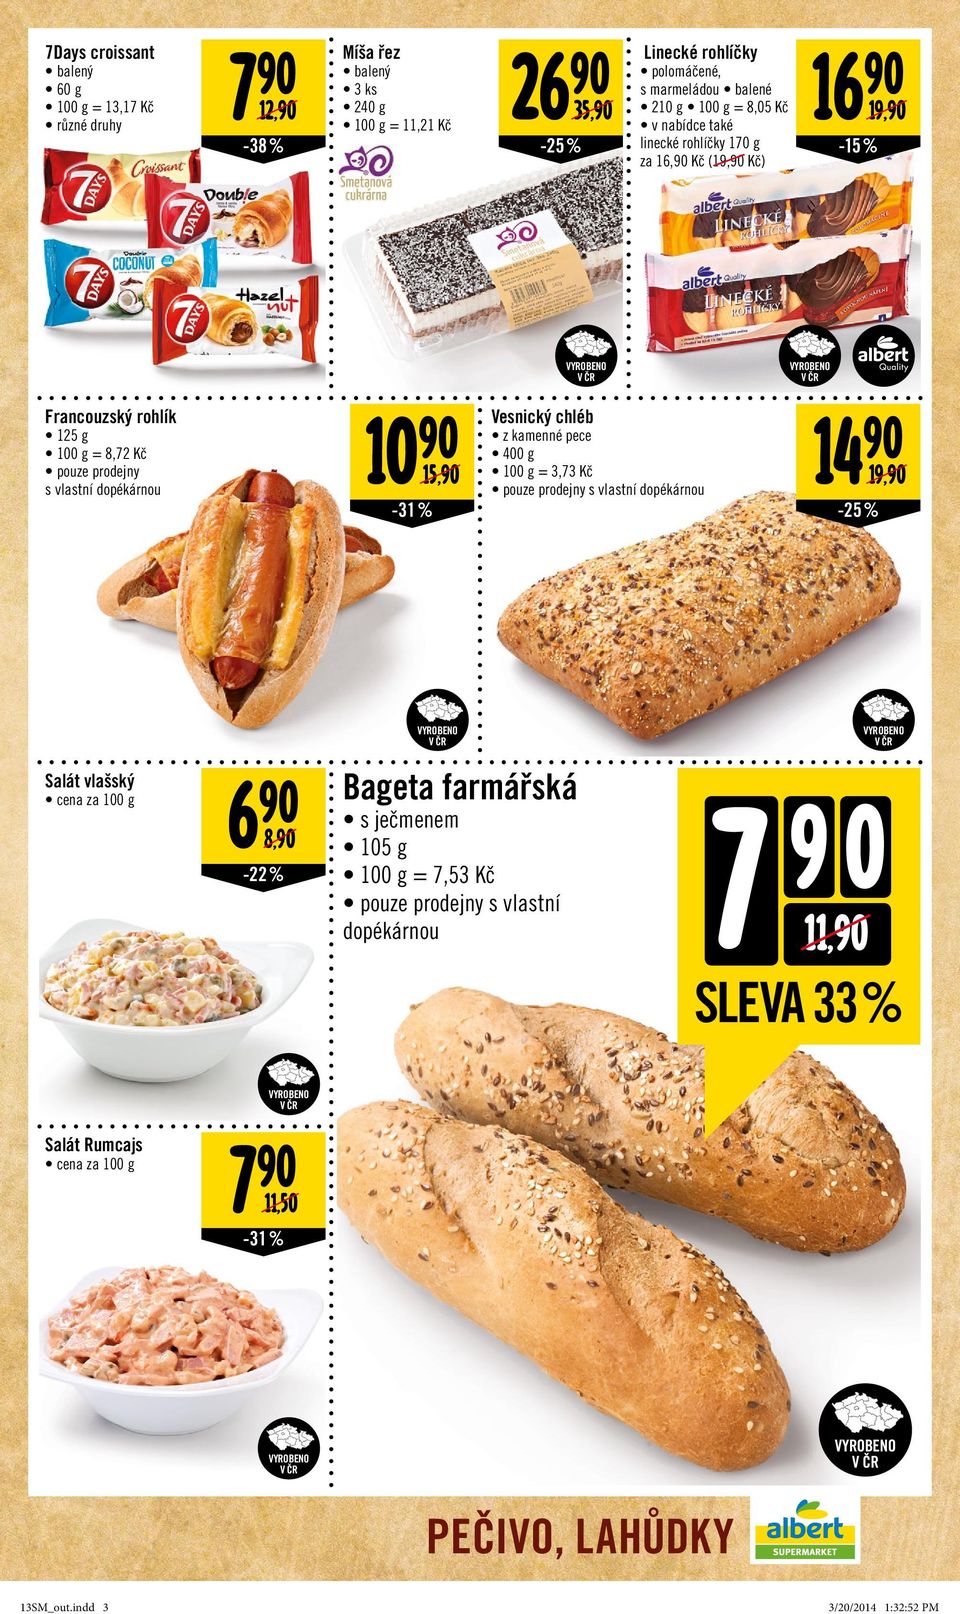 chléb 14 z kamenné pece 400 g 15, = 3,73 Kč 19, pouze prodejny s vlastní dopékárnou -31% -25% Salát vlašský cena za 100 g 6 8, -22% Bageta farmářská s ječmenem